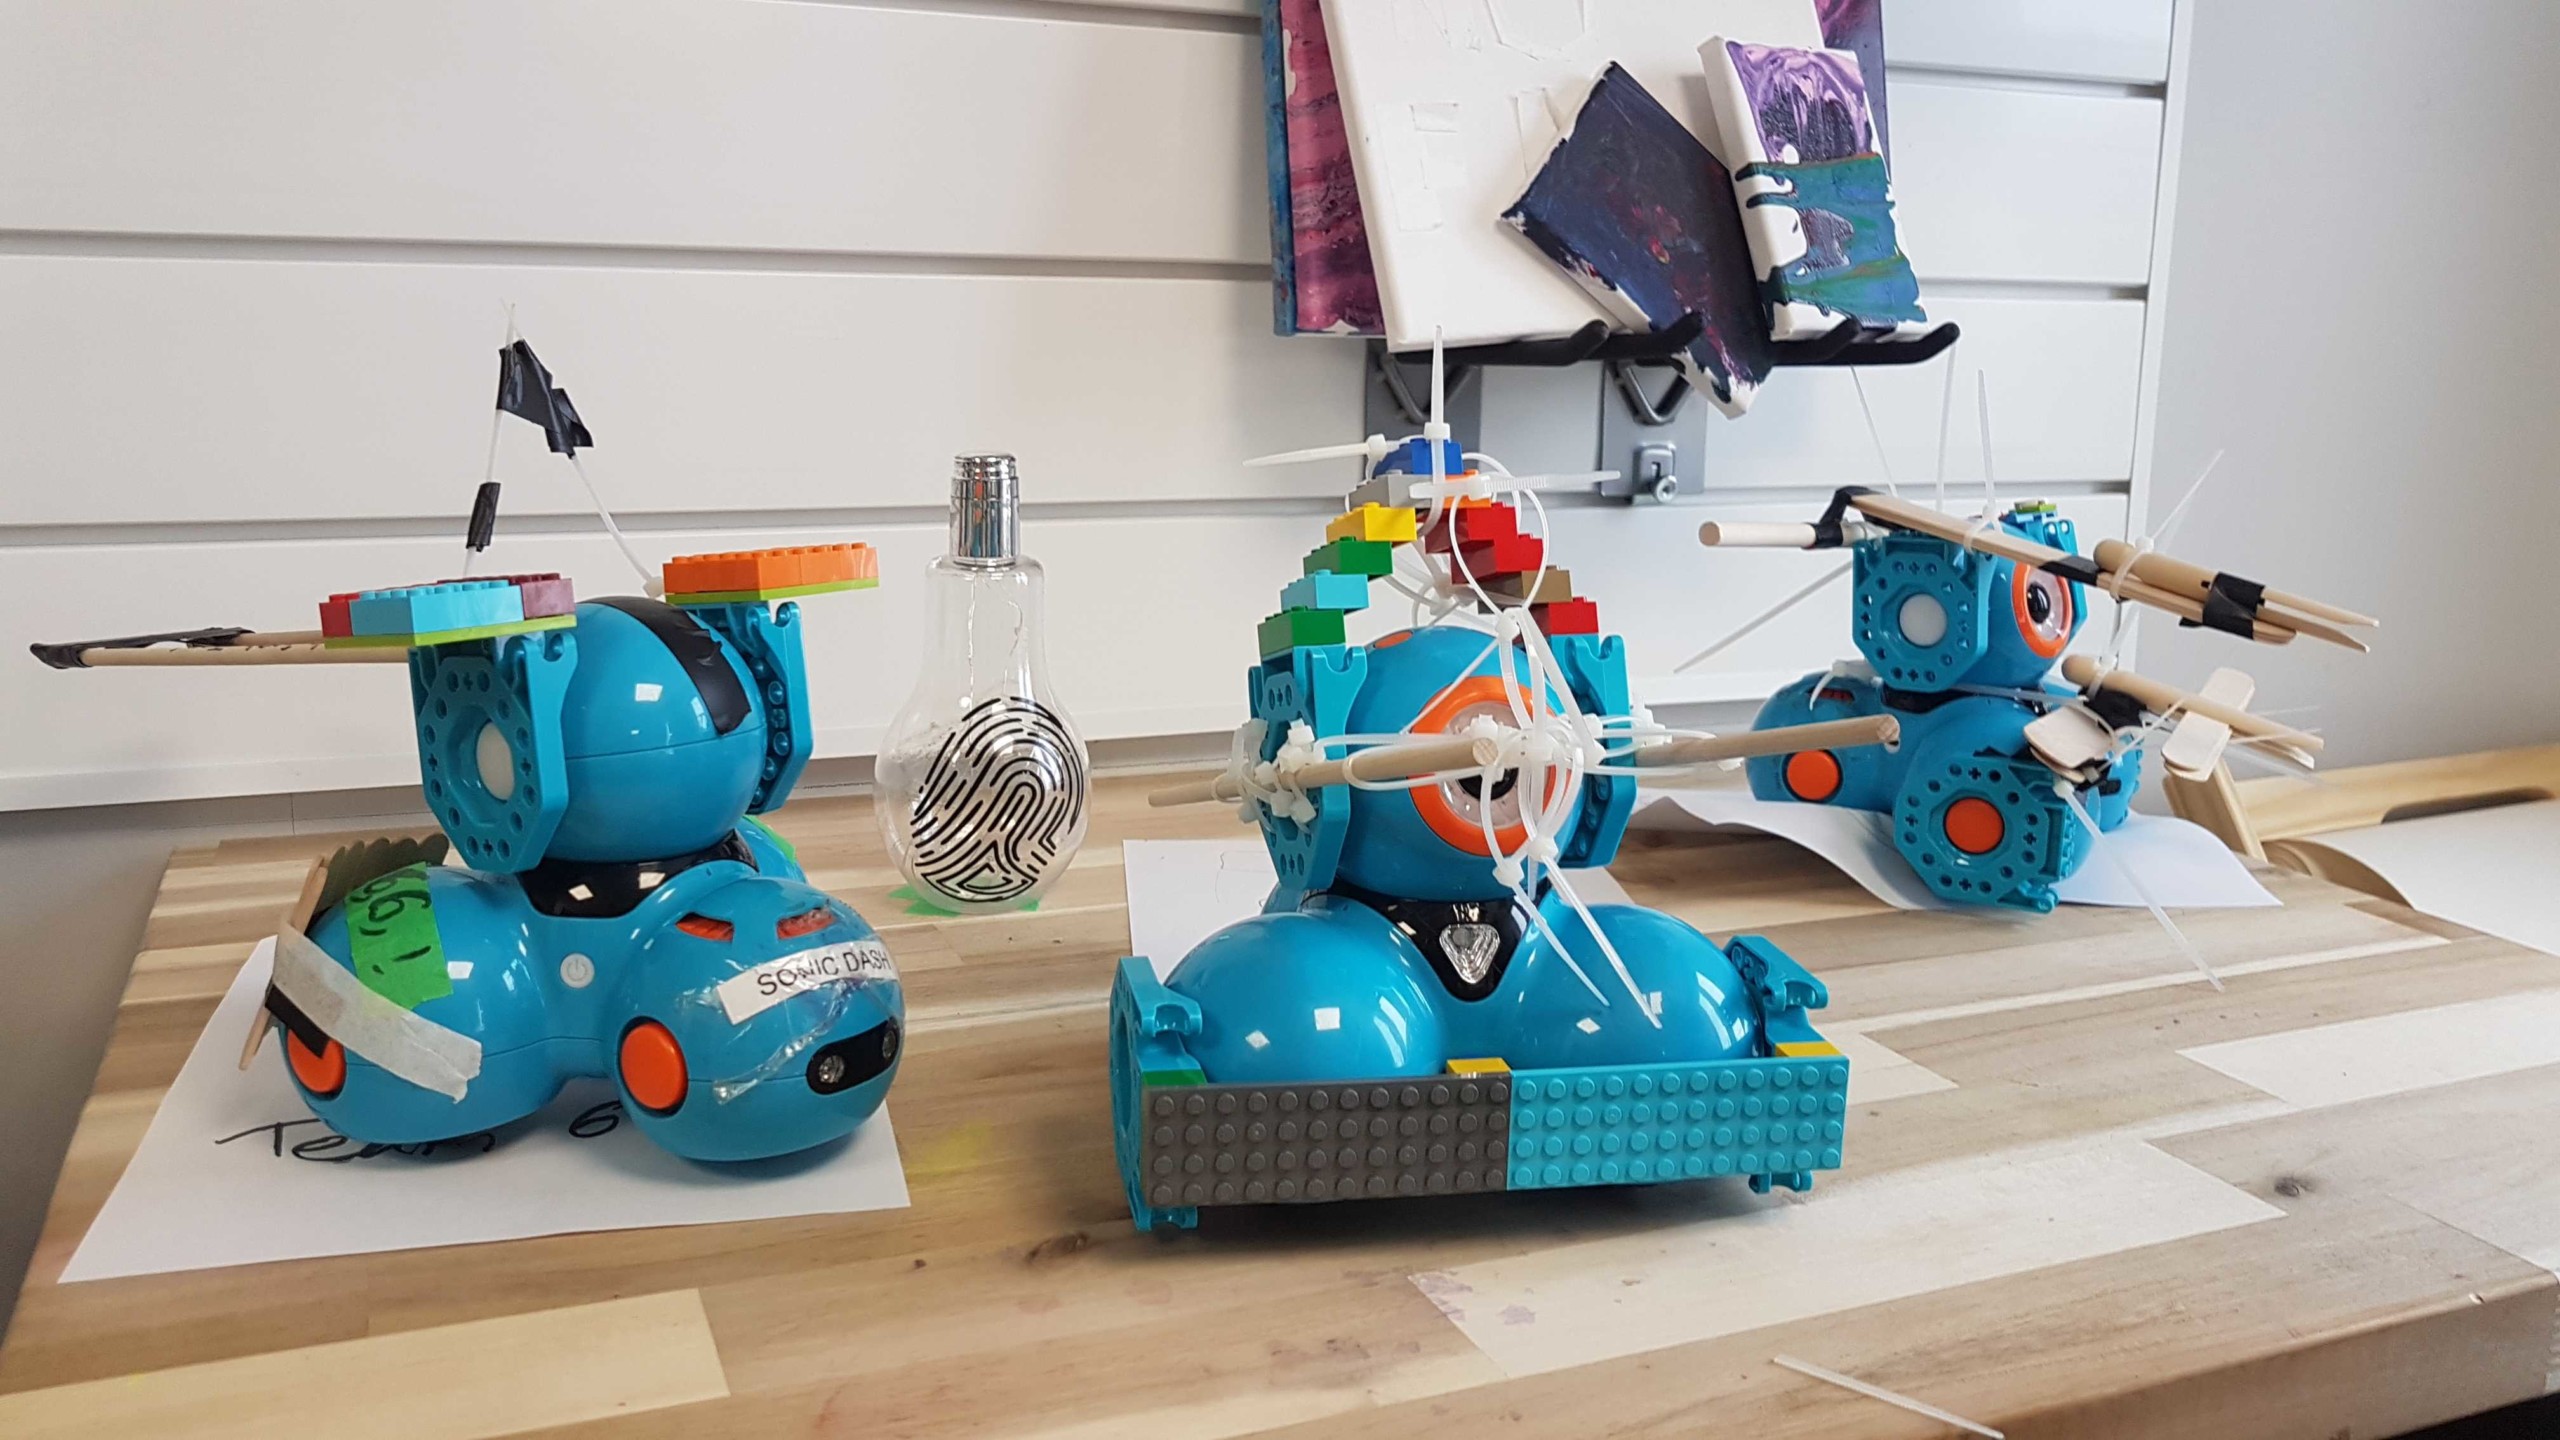 Dash robotos on a table.